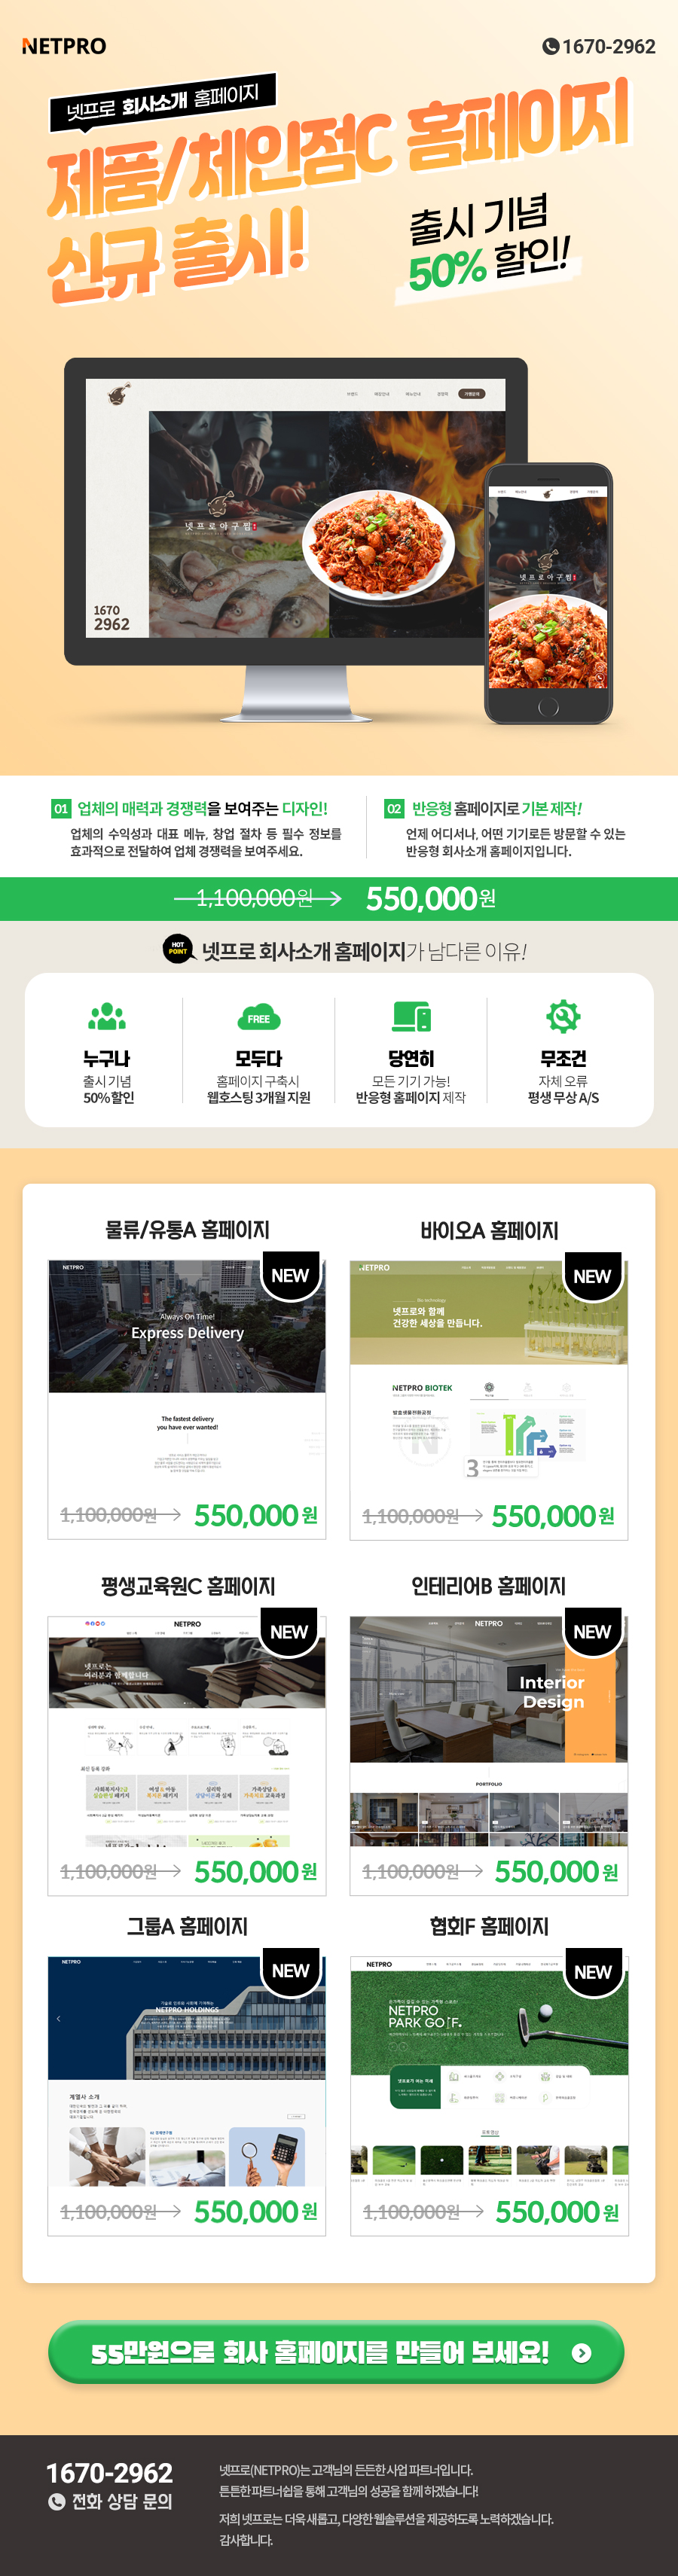 넷프로 회사소개 제품/체인점C 홈페이지 신규 출시!